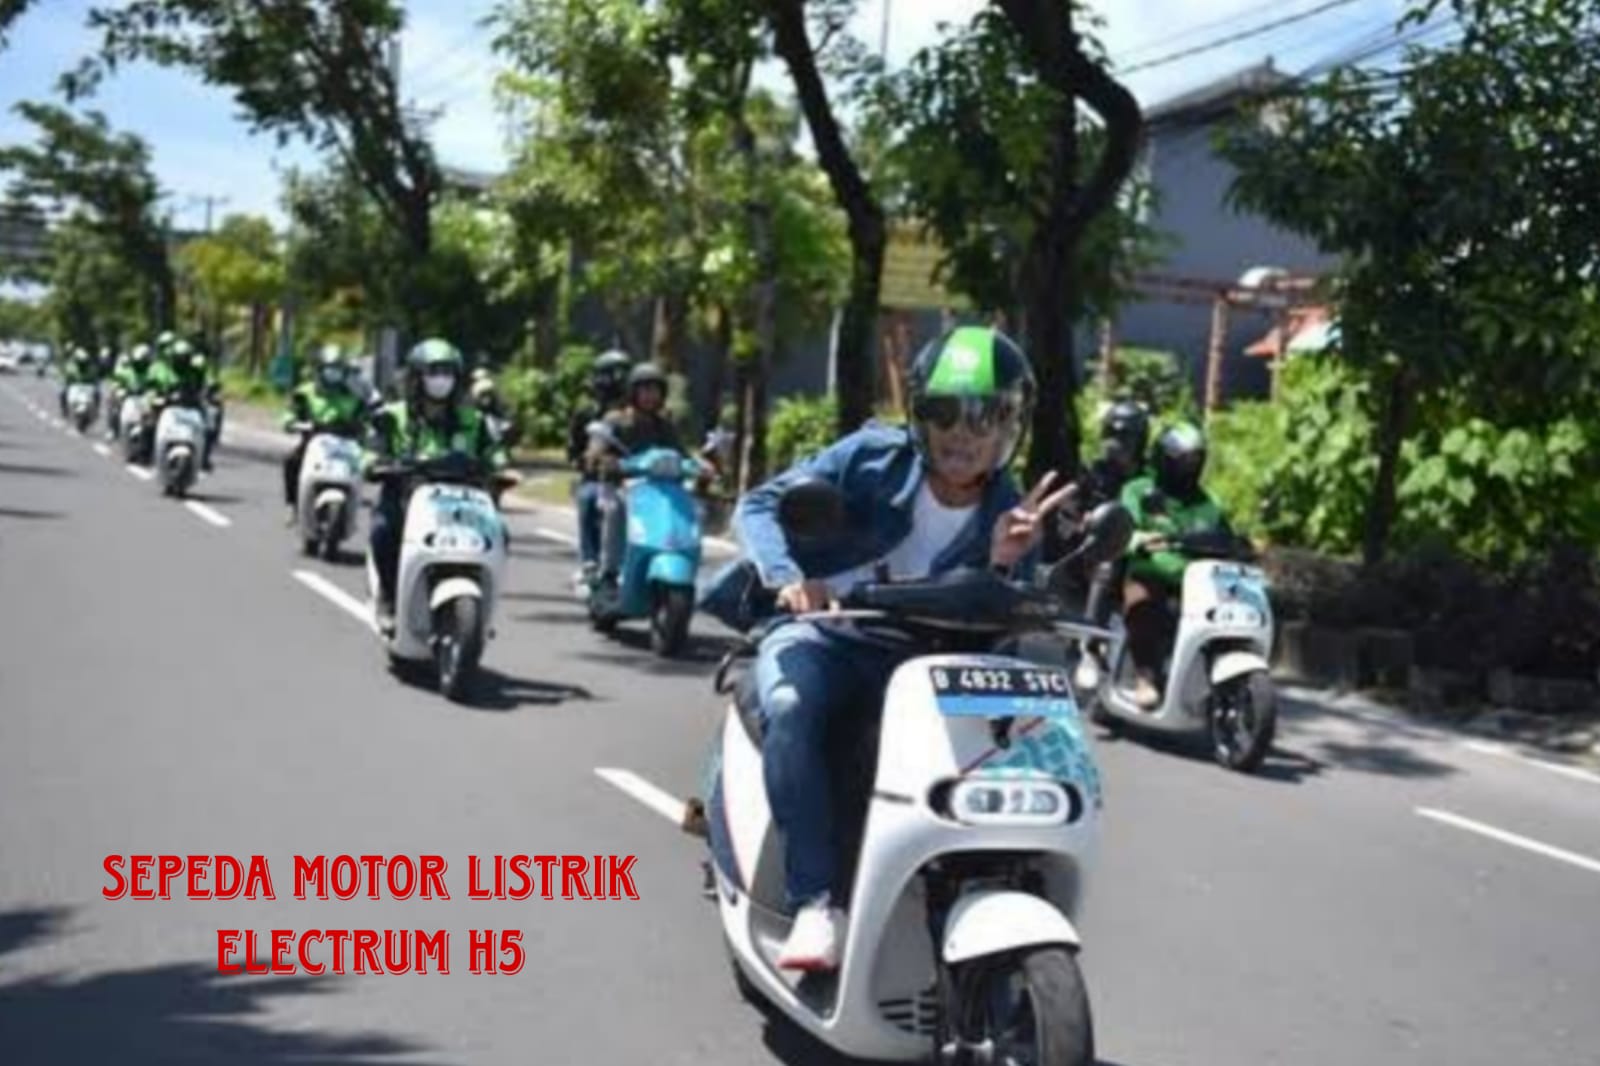 Sepeda Motor Listrik Electrum H5! Harga Terjangkau, Sekali Cas Bisa Dipakai Touring Hingga Jarak 120 Km